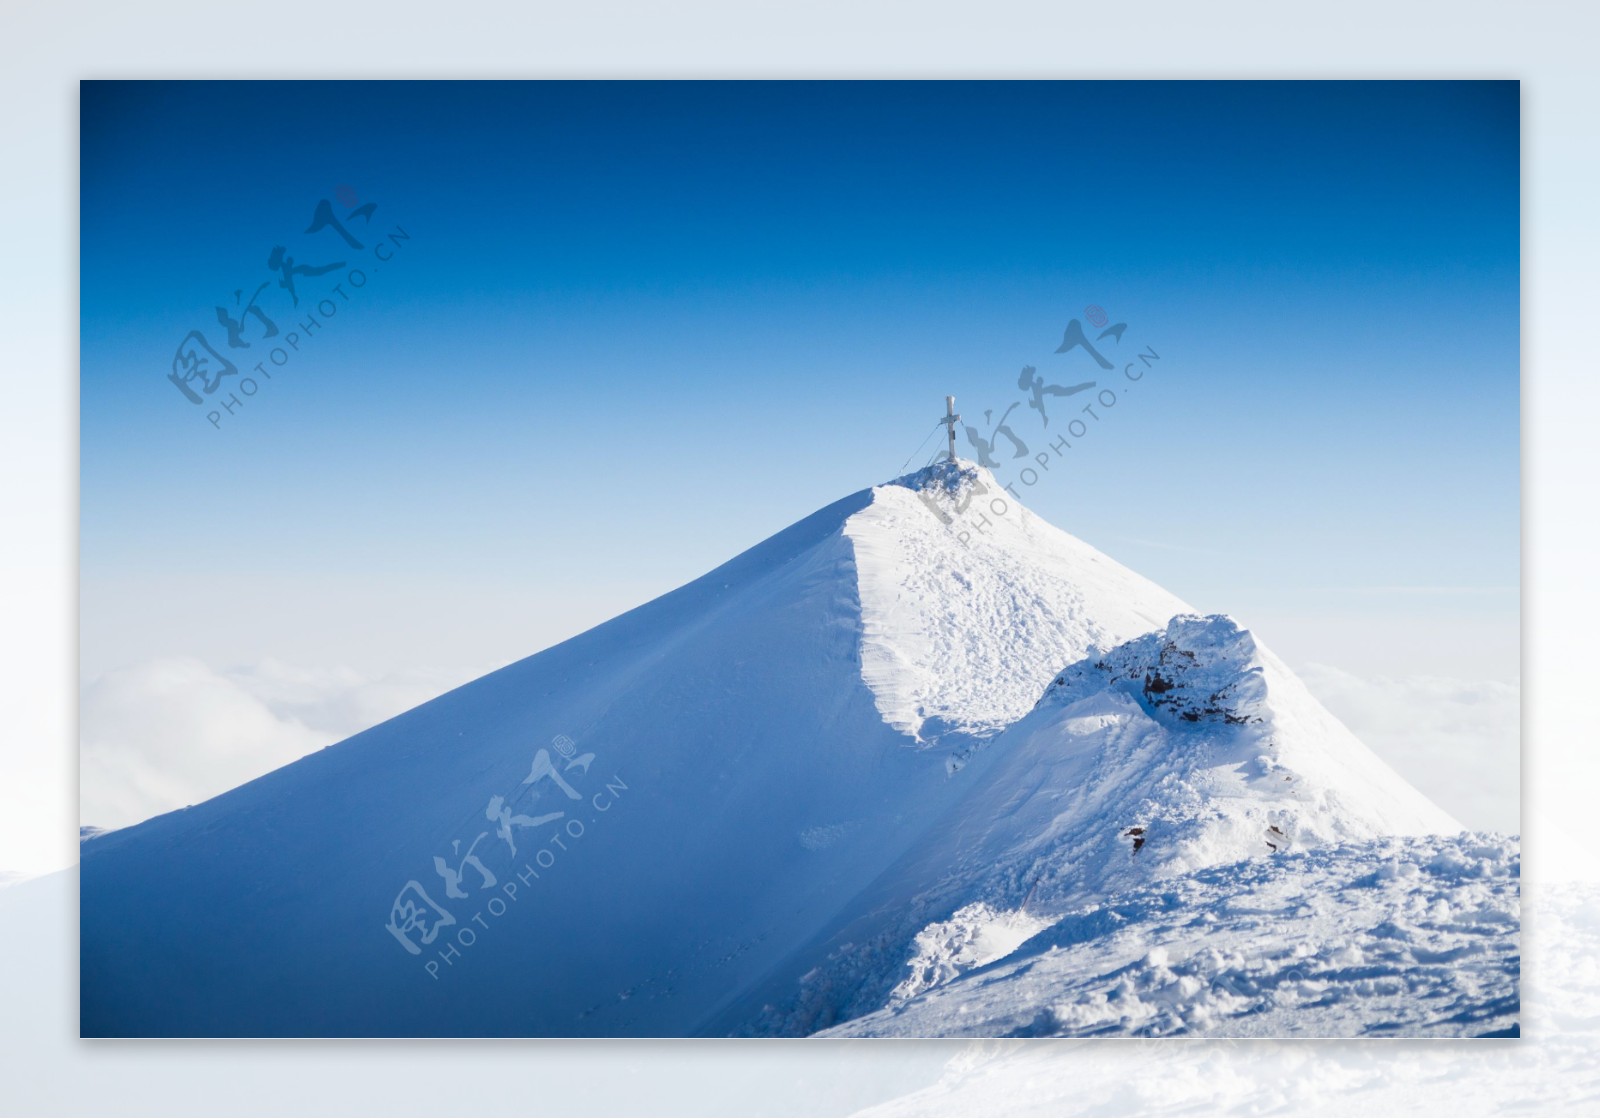 玉龙雪山风景图片